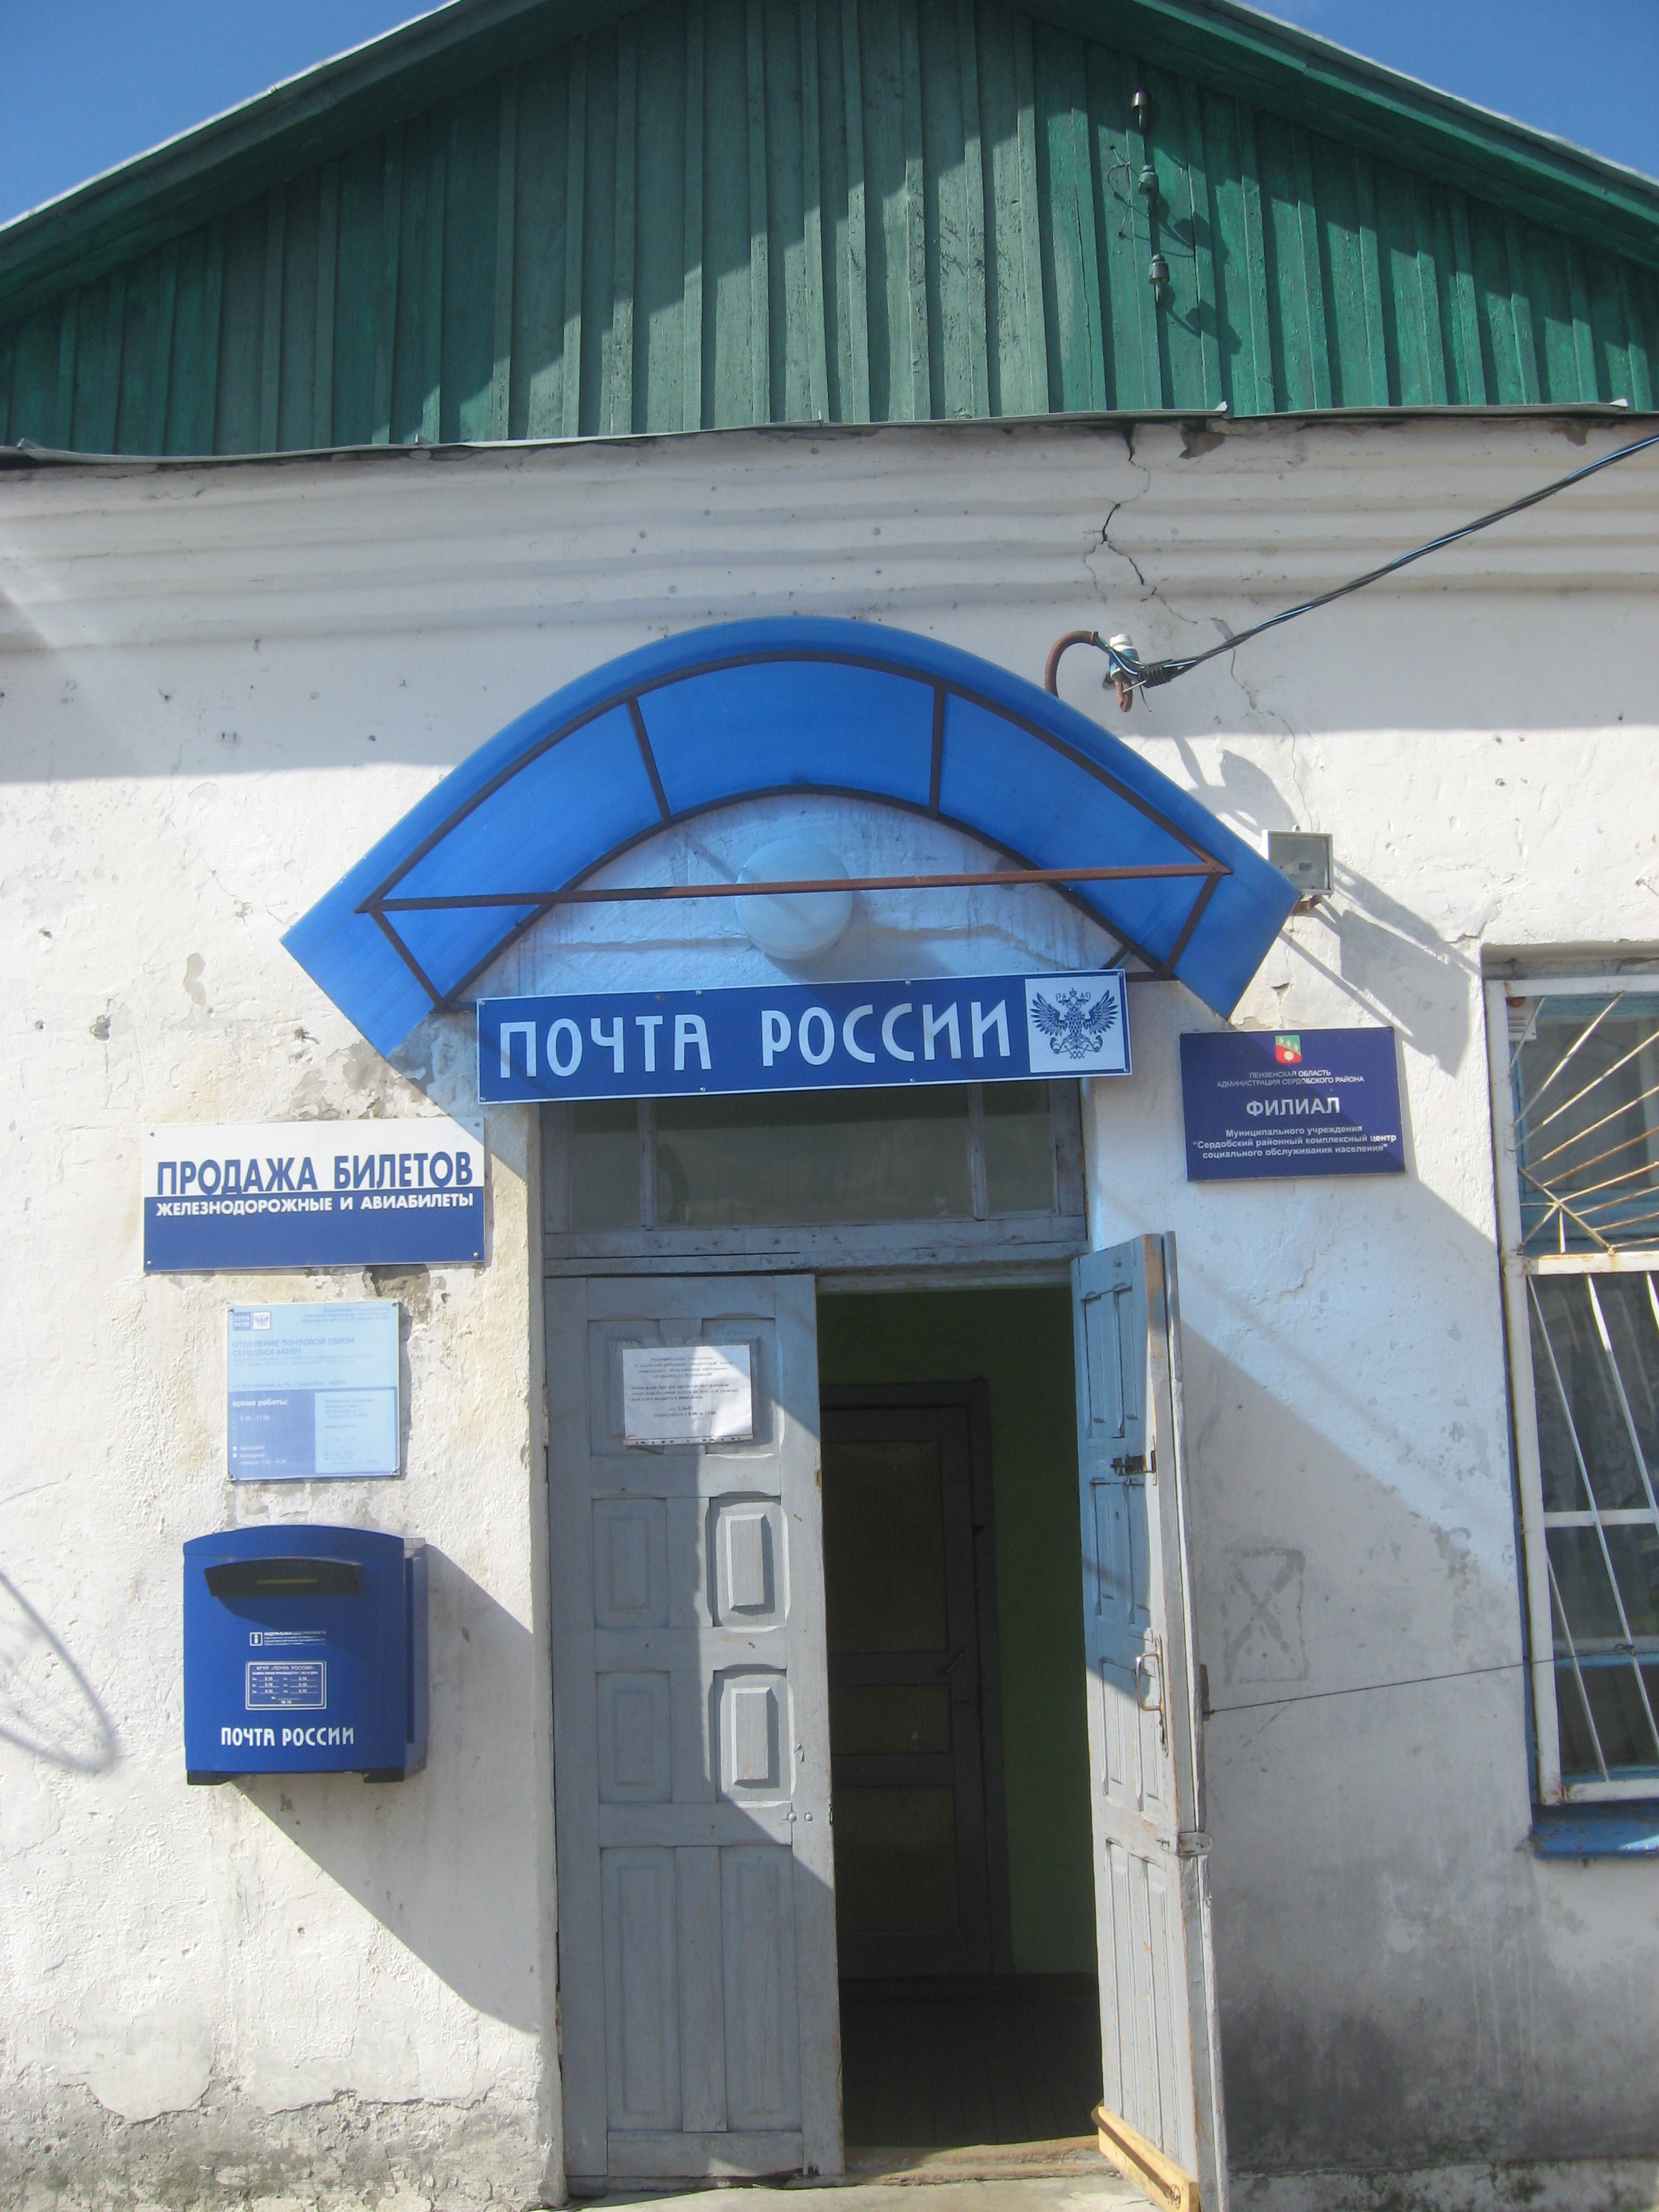 ВХОД, отделение почтовой связи 442891, Пензенская обл., Сердобск